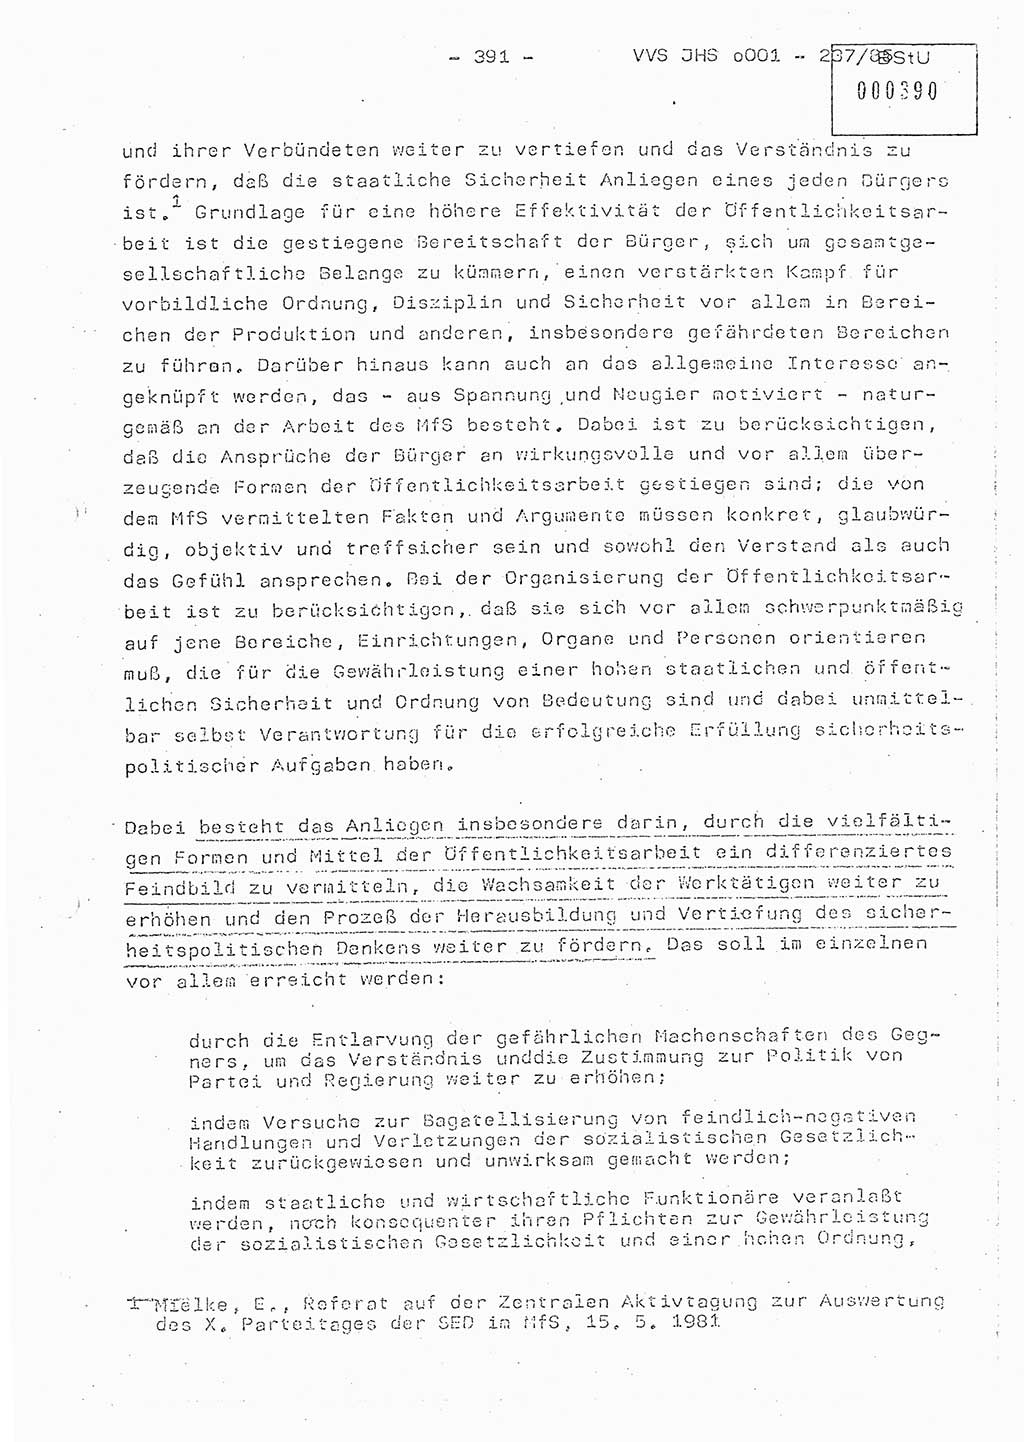 Dissertation Oberstleutnant Peter Jakulski (JHS), Oberstleutnat Christian Rudolph (HA Ⅸ), Major Horst Böttger (ZMD), Major Wolfgang Grüneberg (JHS), Major Albert Meutsch (JHS), Ministerium für Staatssicherheit (MfS) [Deutsche Demokratische Republik (DDR)], Juristische Hochschule (JHS), Vertrauliche Verschlußsache (VVS) o001-237/85, Potsdam 1985, Seite 391 (Diss. MfS DDR JHS VVS o001-237/85 1985, S. 391)